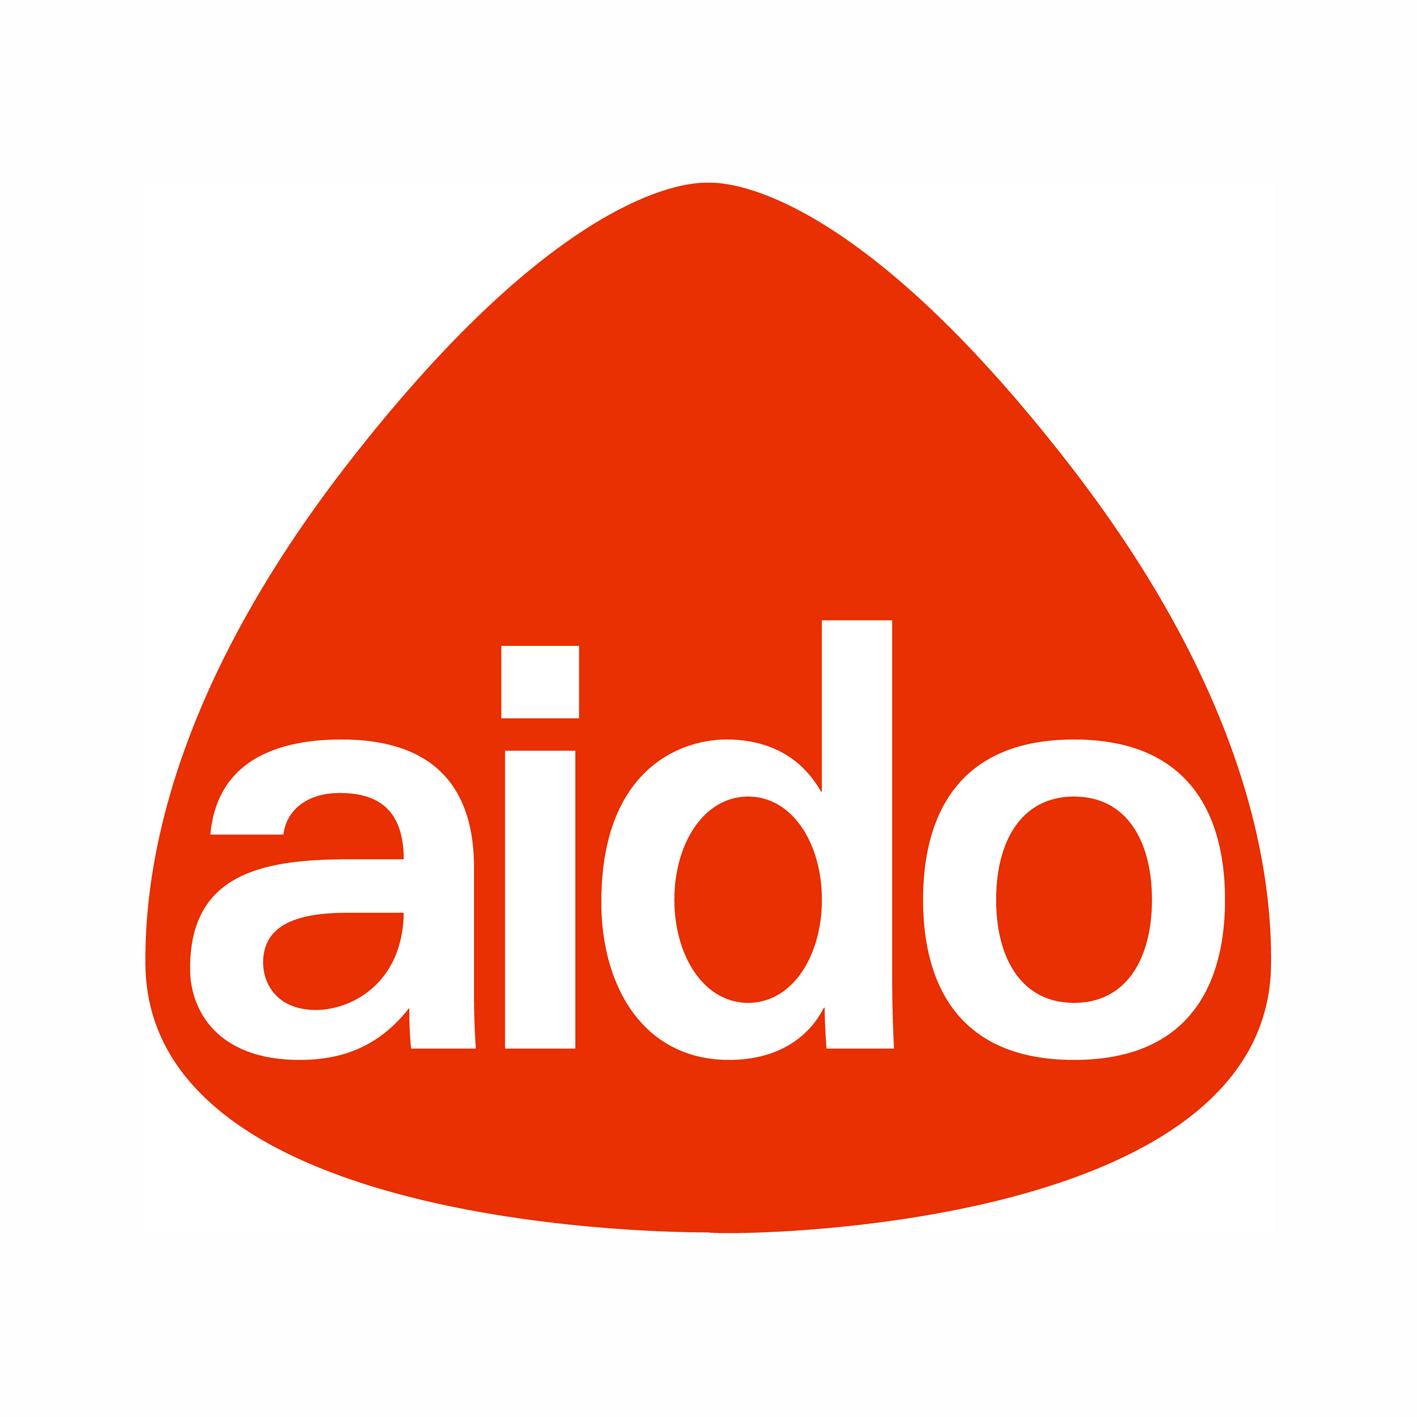 Logo Aido